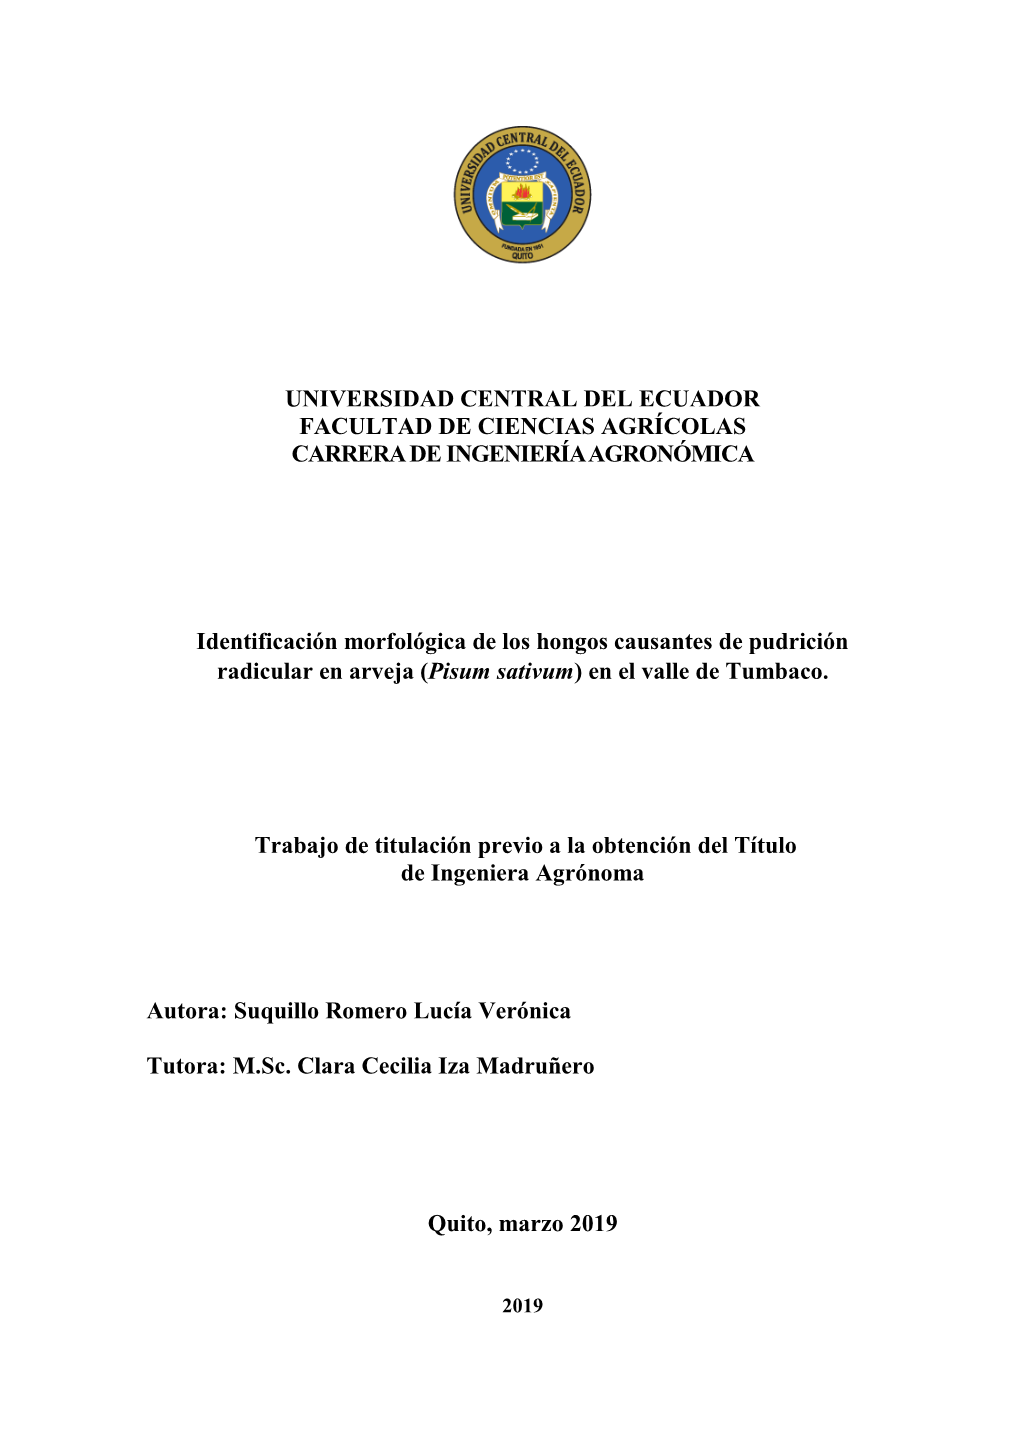 UNIVERSIDAD CENTRAL DEL ECUADOR FACULTAD DE CIENCIAS AGRÍCOLAS CARRERA DE INGENIERÍA AGRONÓMICA Identificación Morfológica